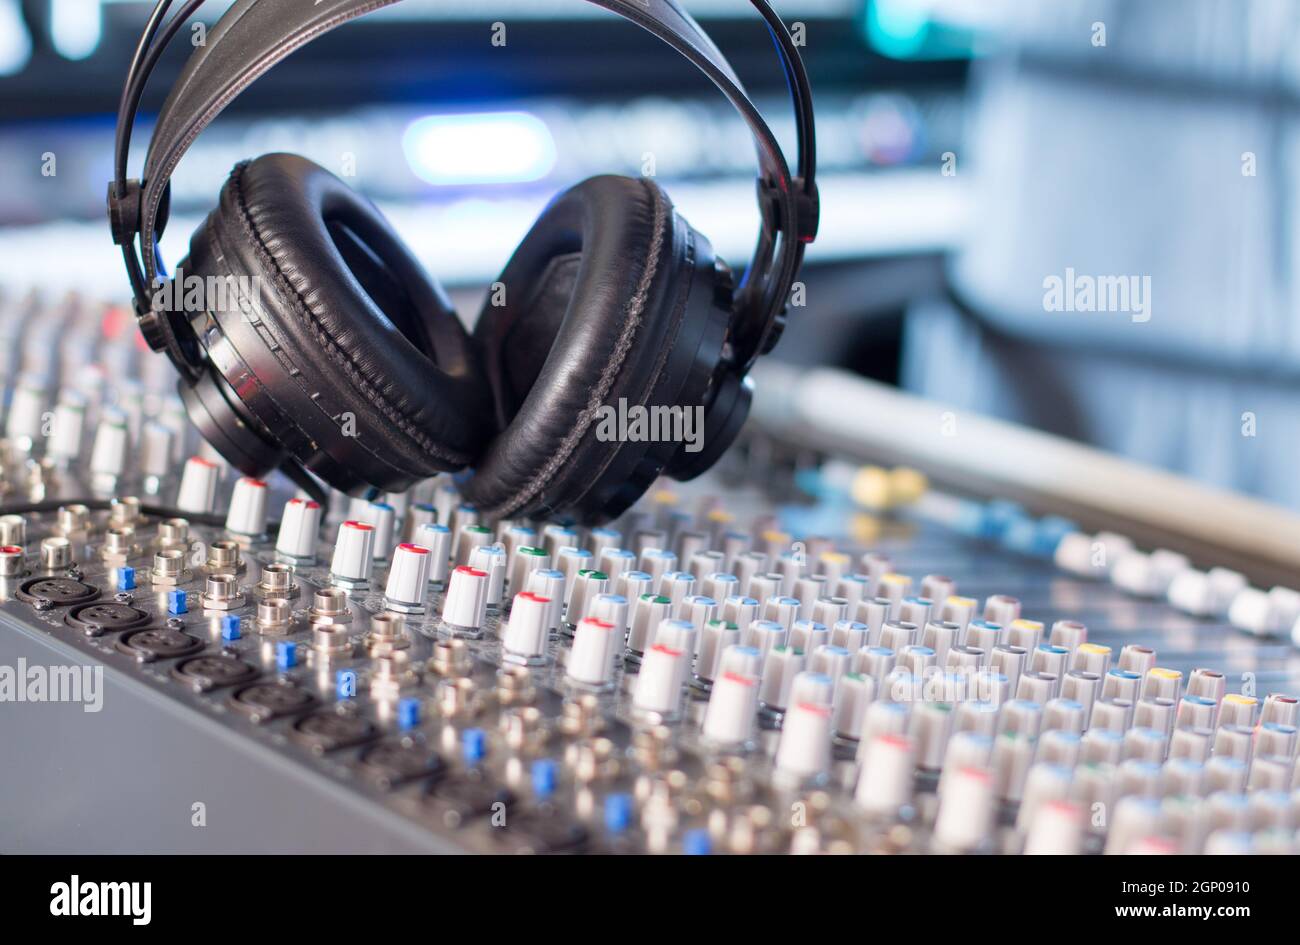 Professional sound recording studio: Headphones on a mixer desk, Radio  Stock Photo - Alamy